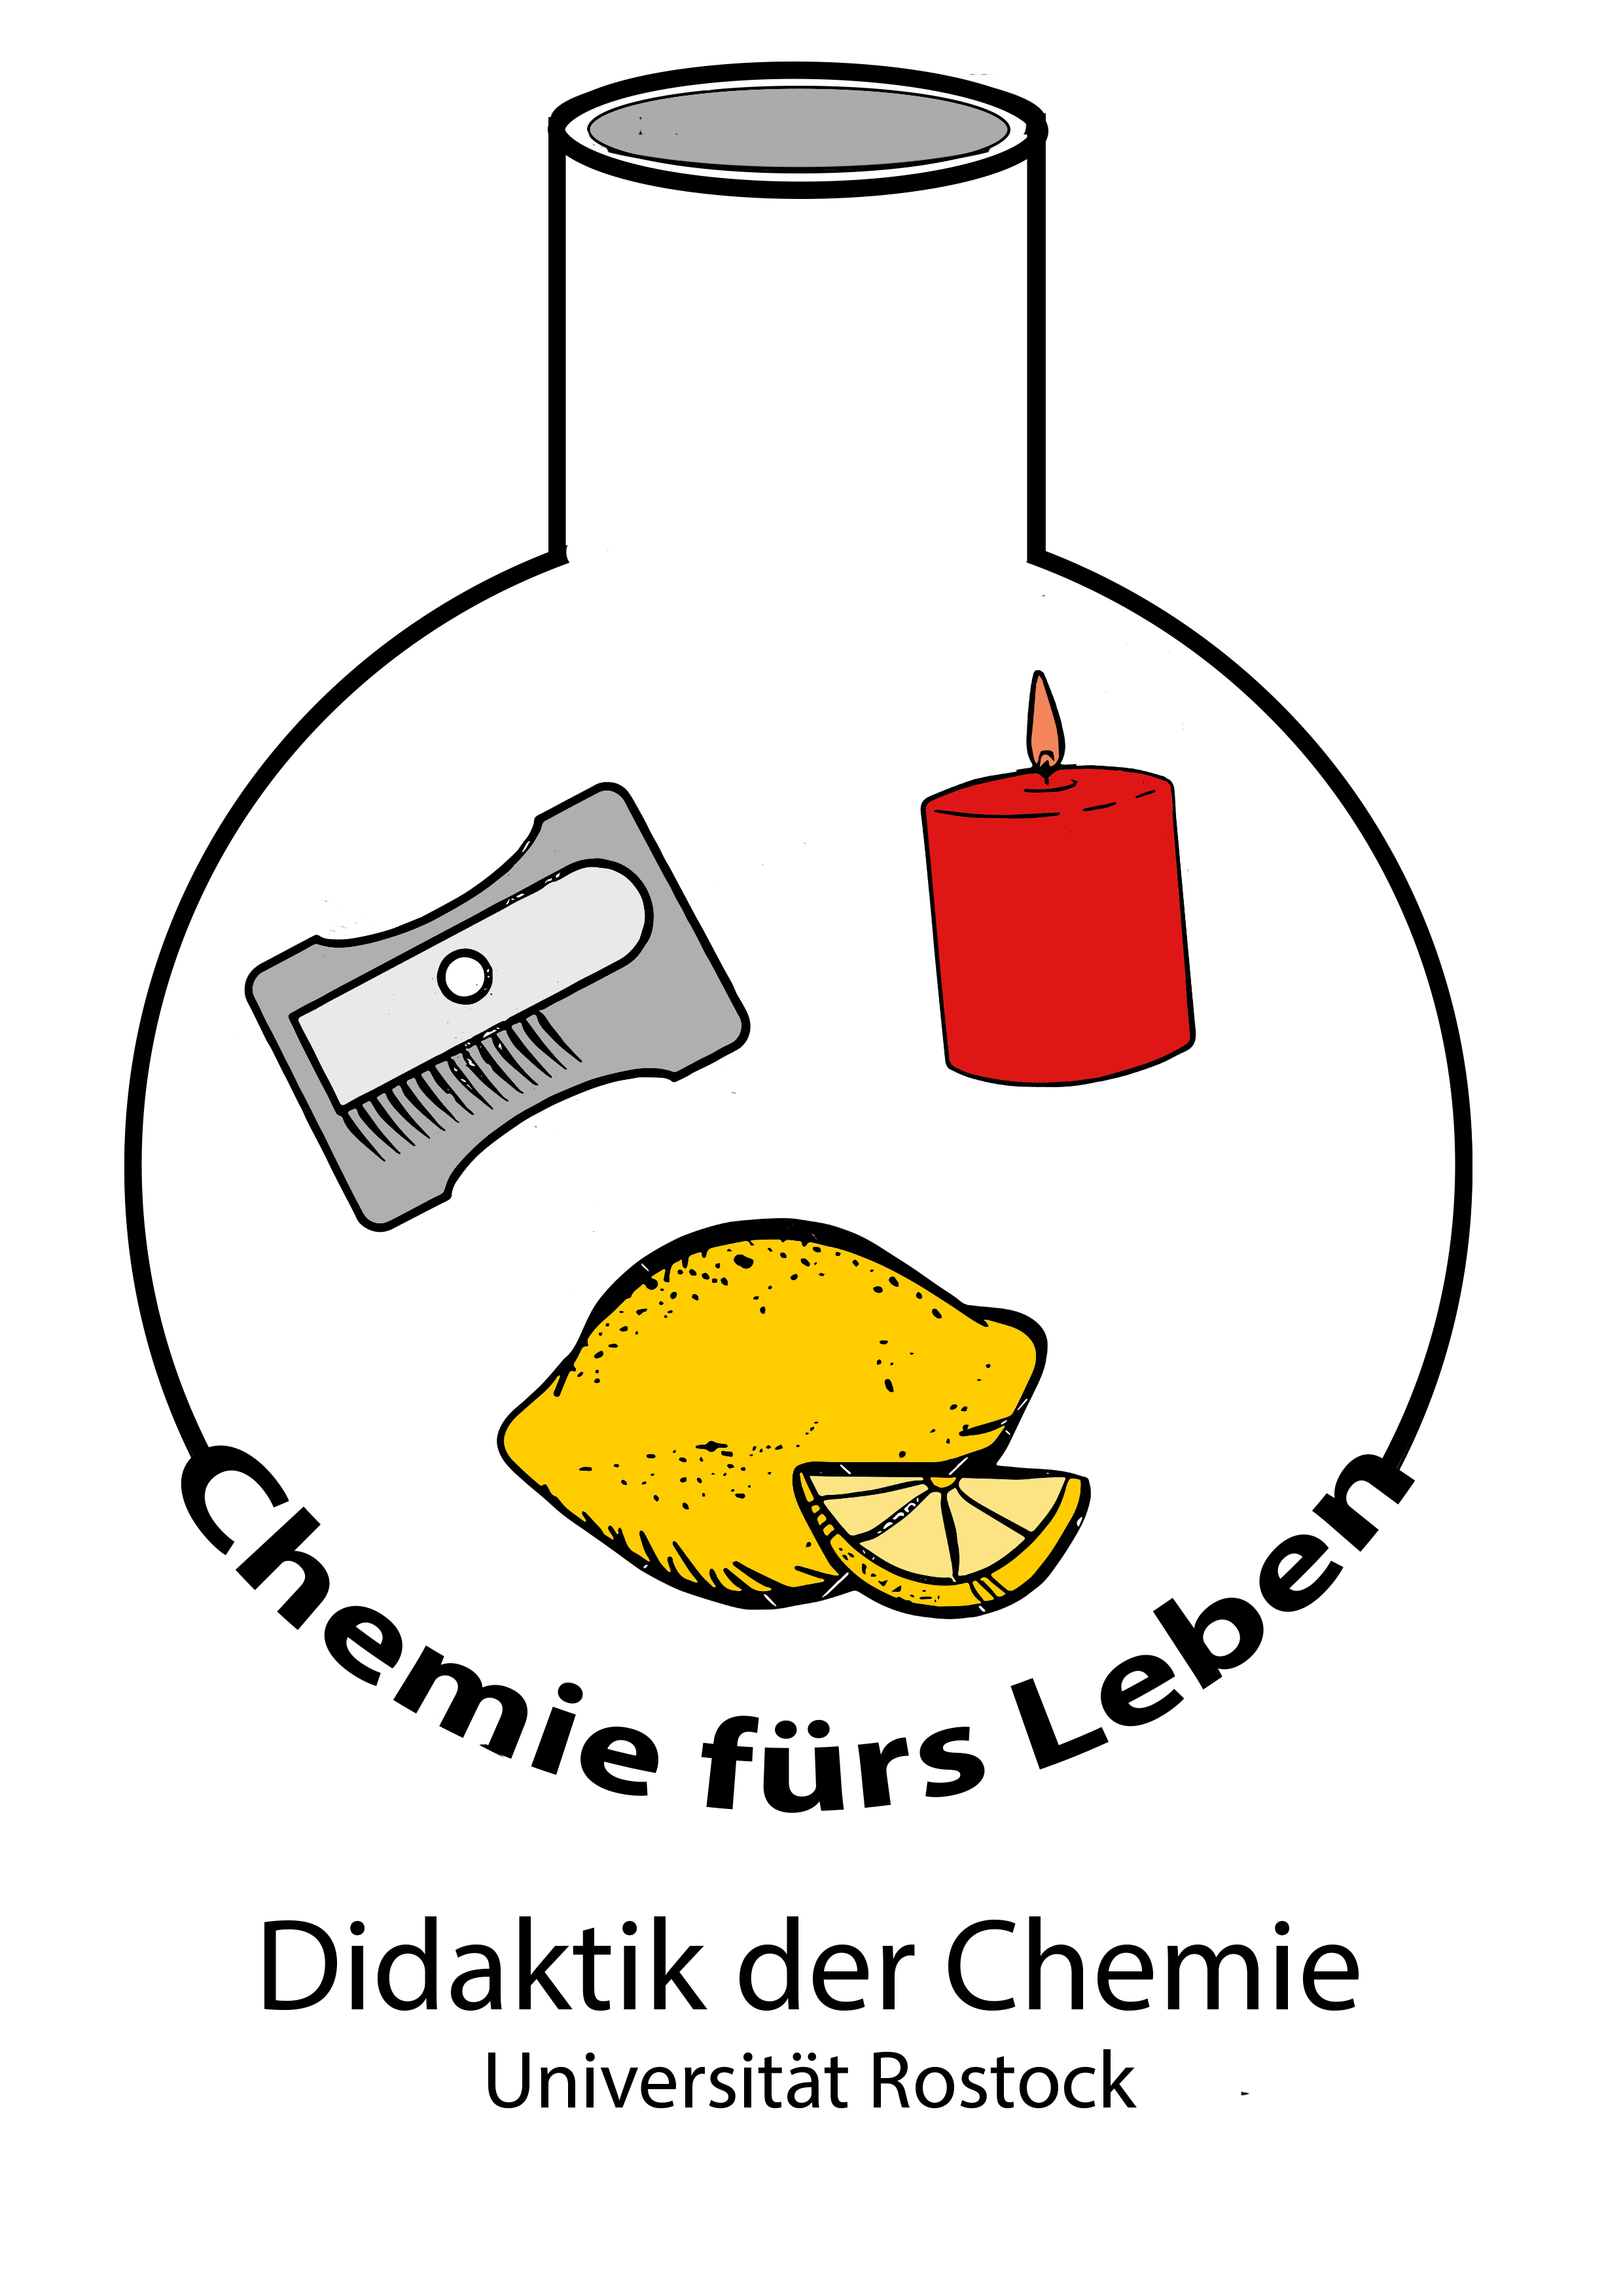 Rundkolben mit Anspitzer, Kerze und Zitrone in der Mitte